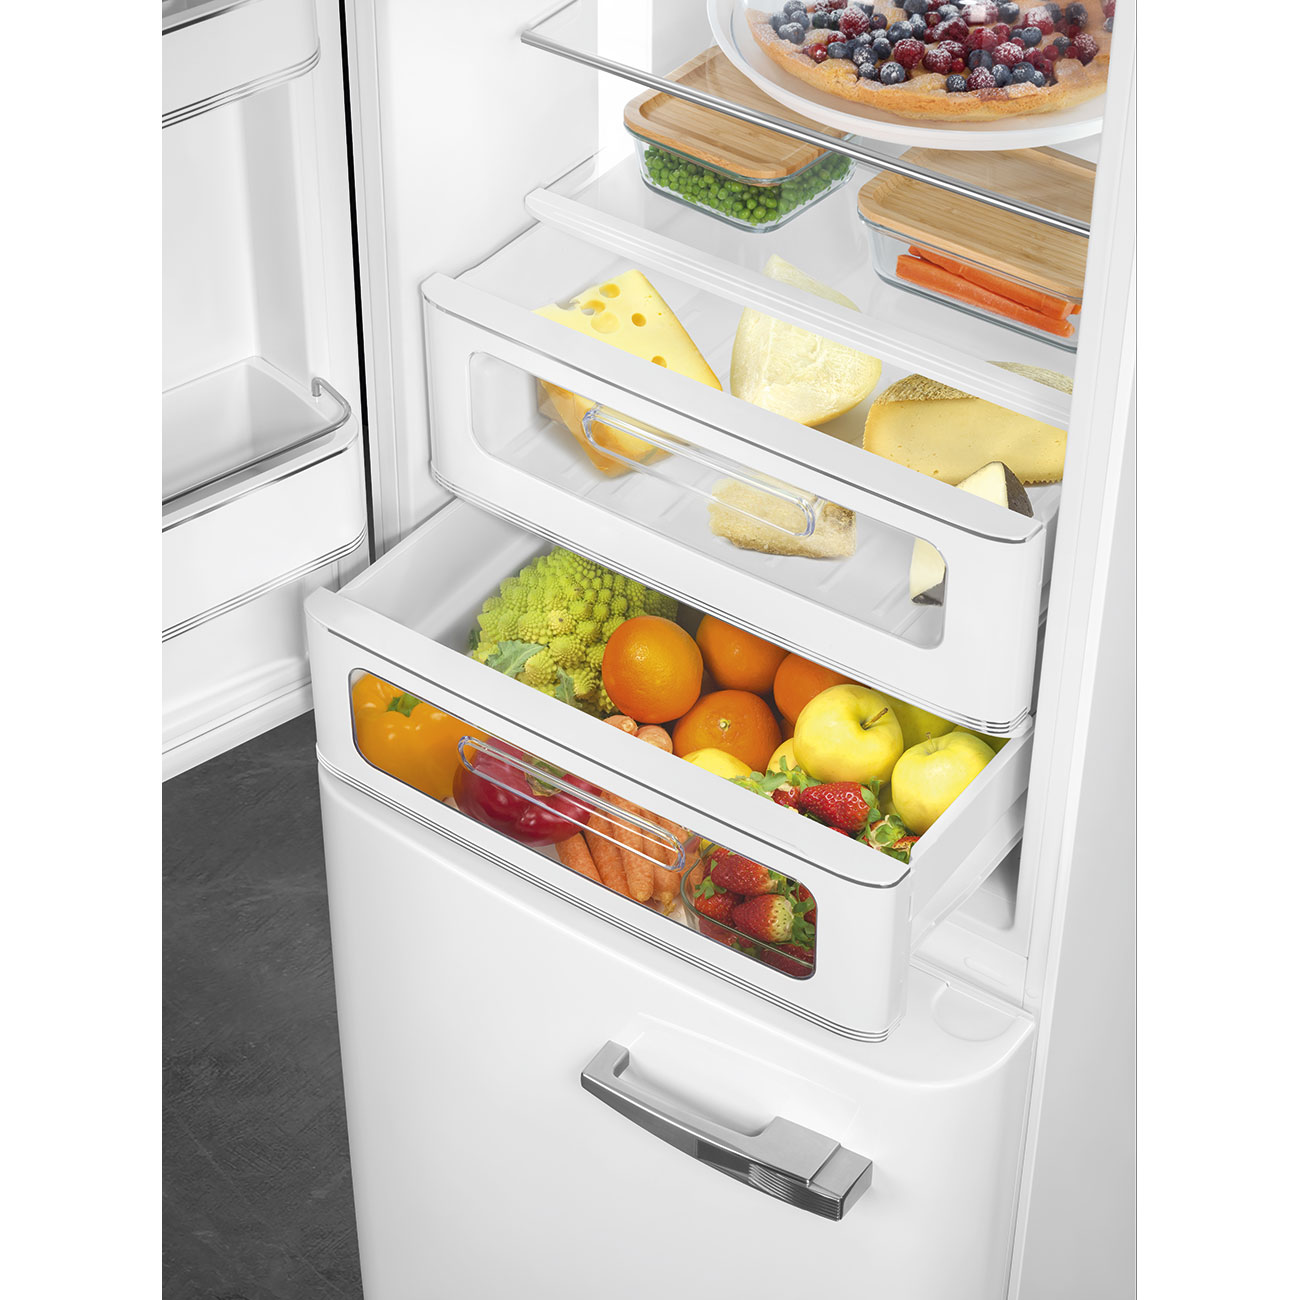 White refrigerator - Smeg_8